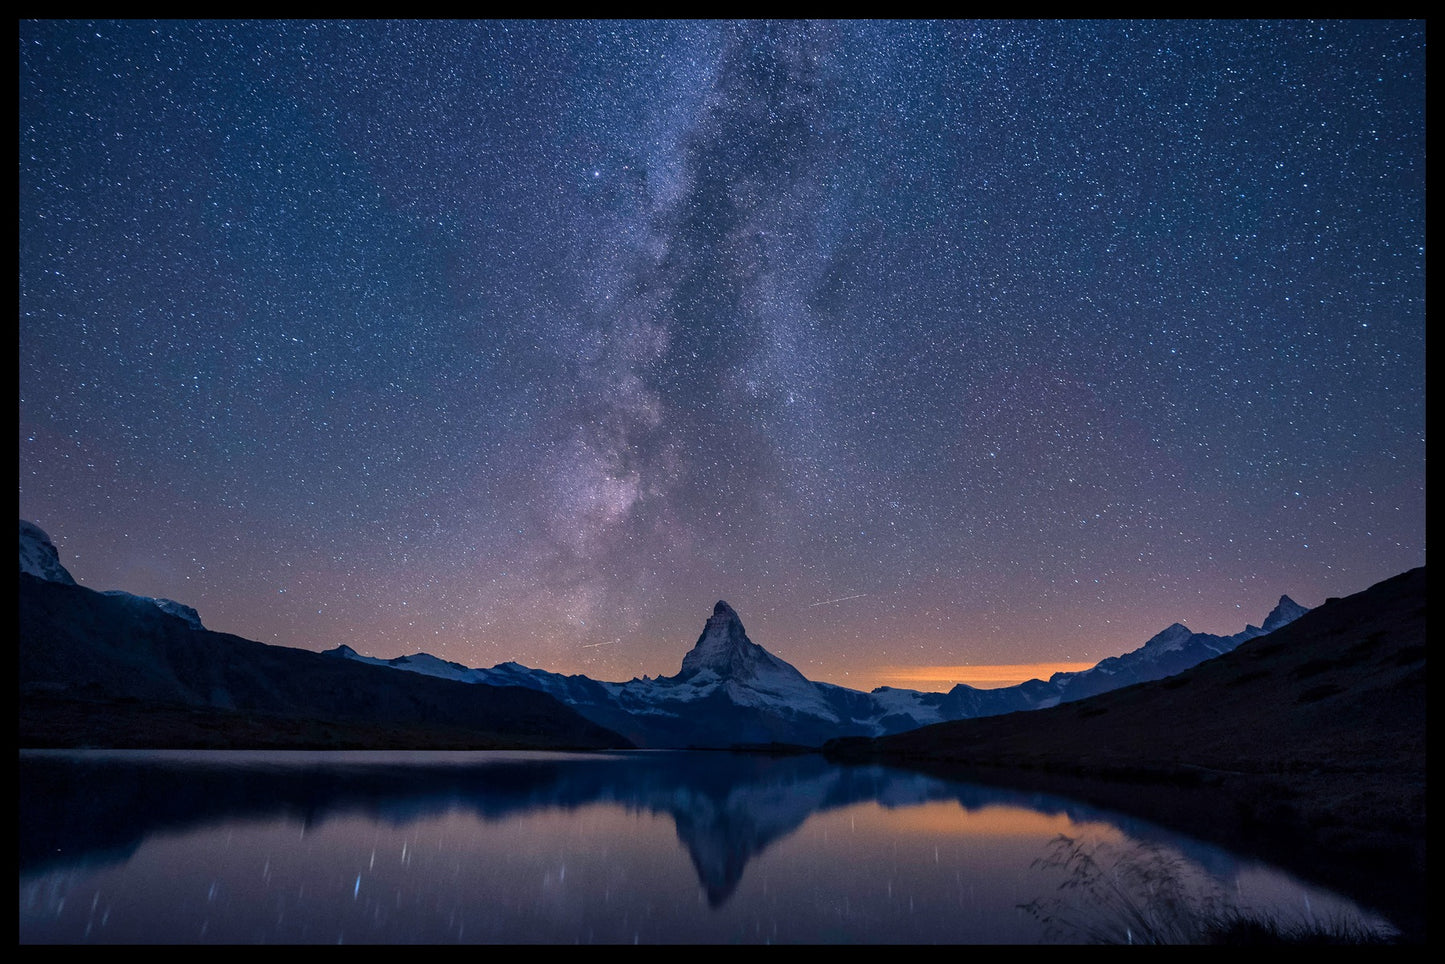 Matterhorn and Milky Way juliste